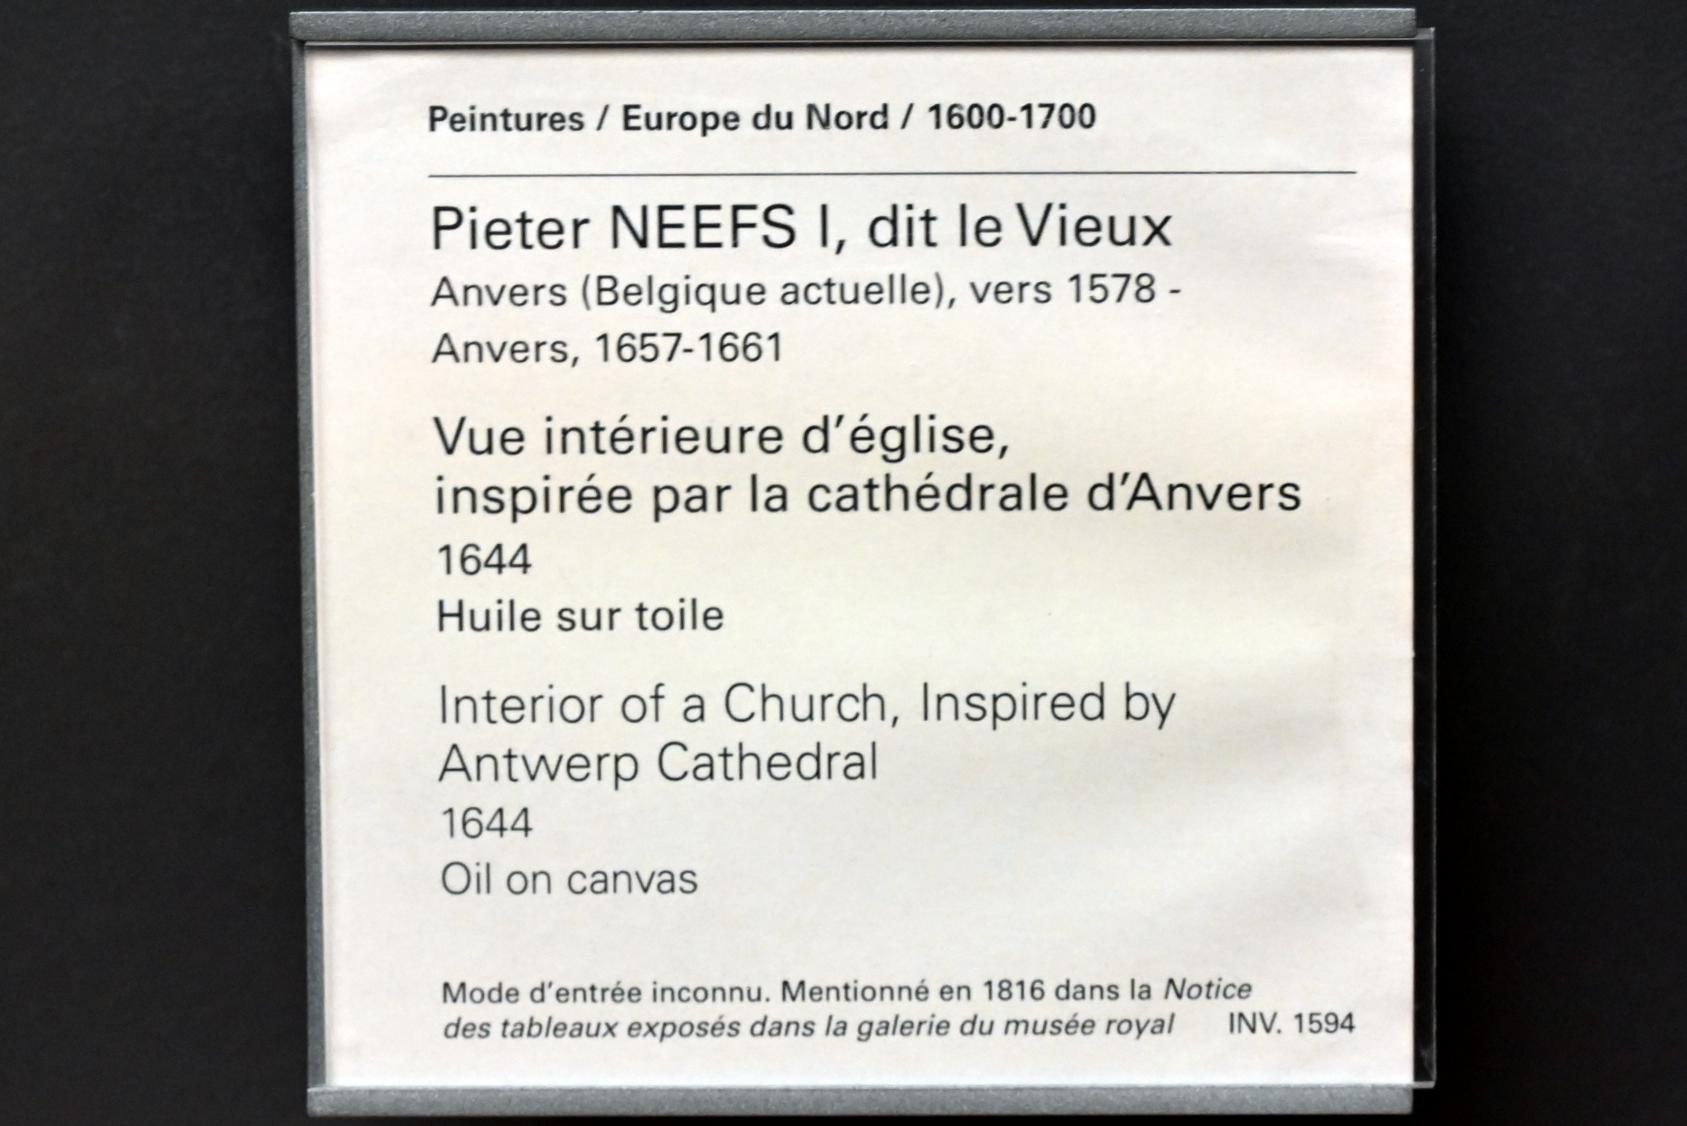 Pieter Neefs der Ältere (1644), Innenansicht einer Kirche, inspiriert von der Antwerpener Kathedrale, Paris, Musée du Louvre, Saal 803, 1644, Bild 2/2